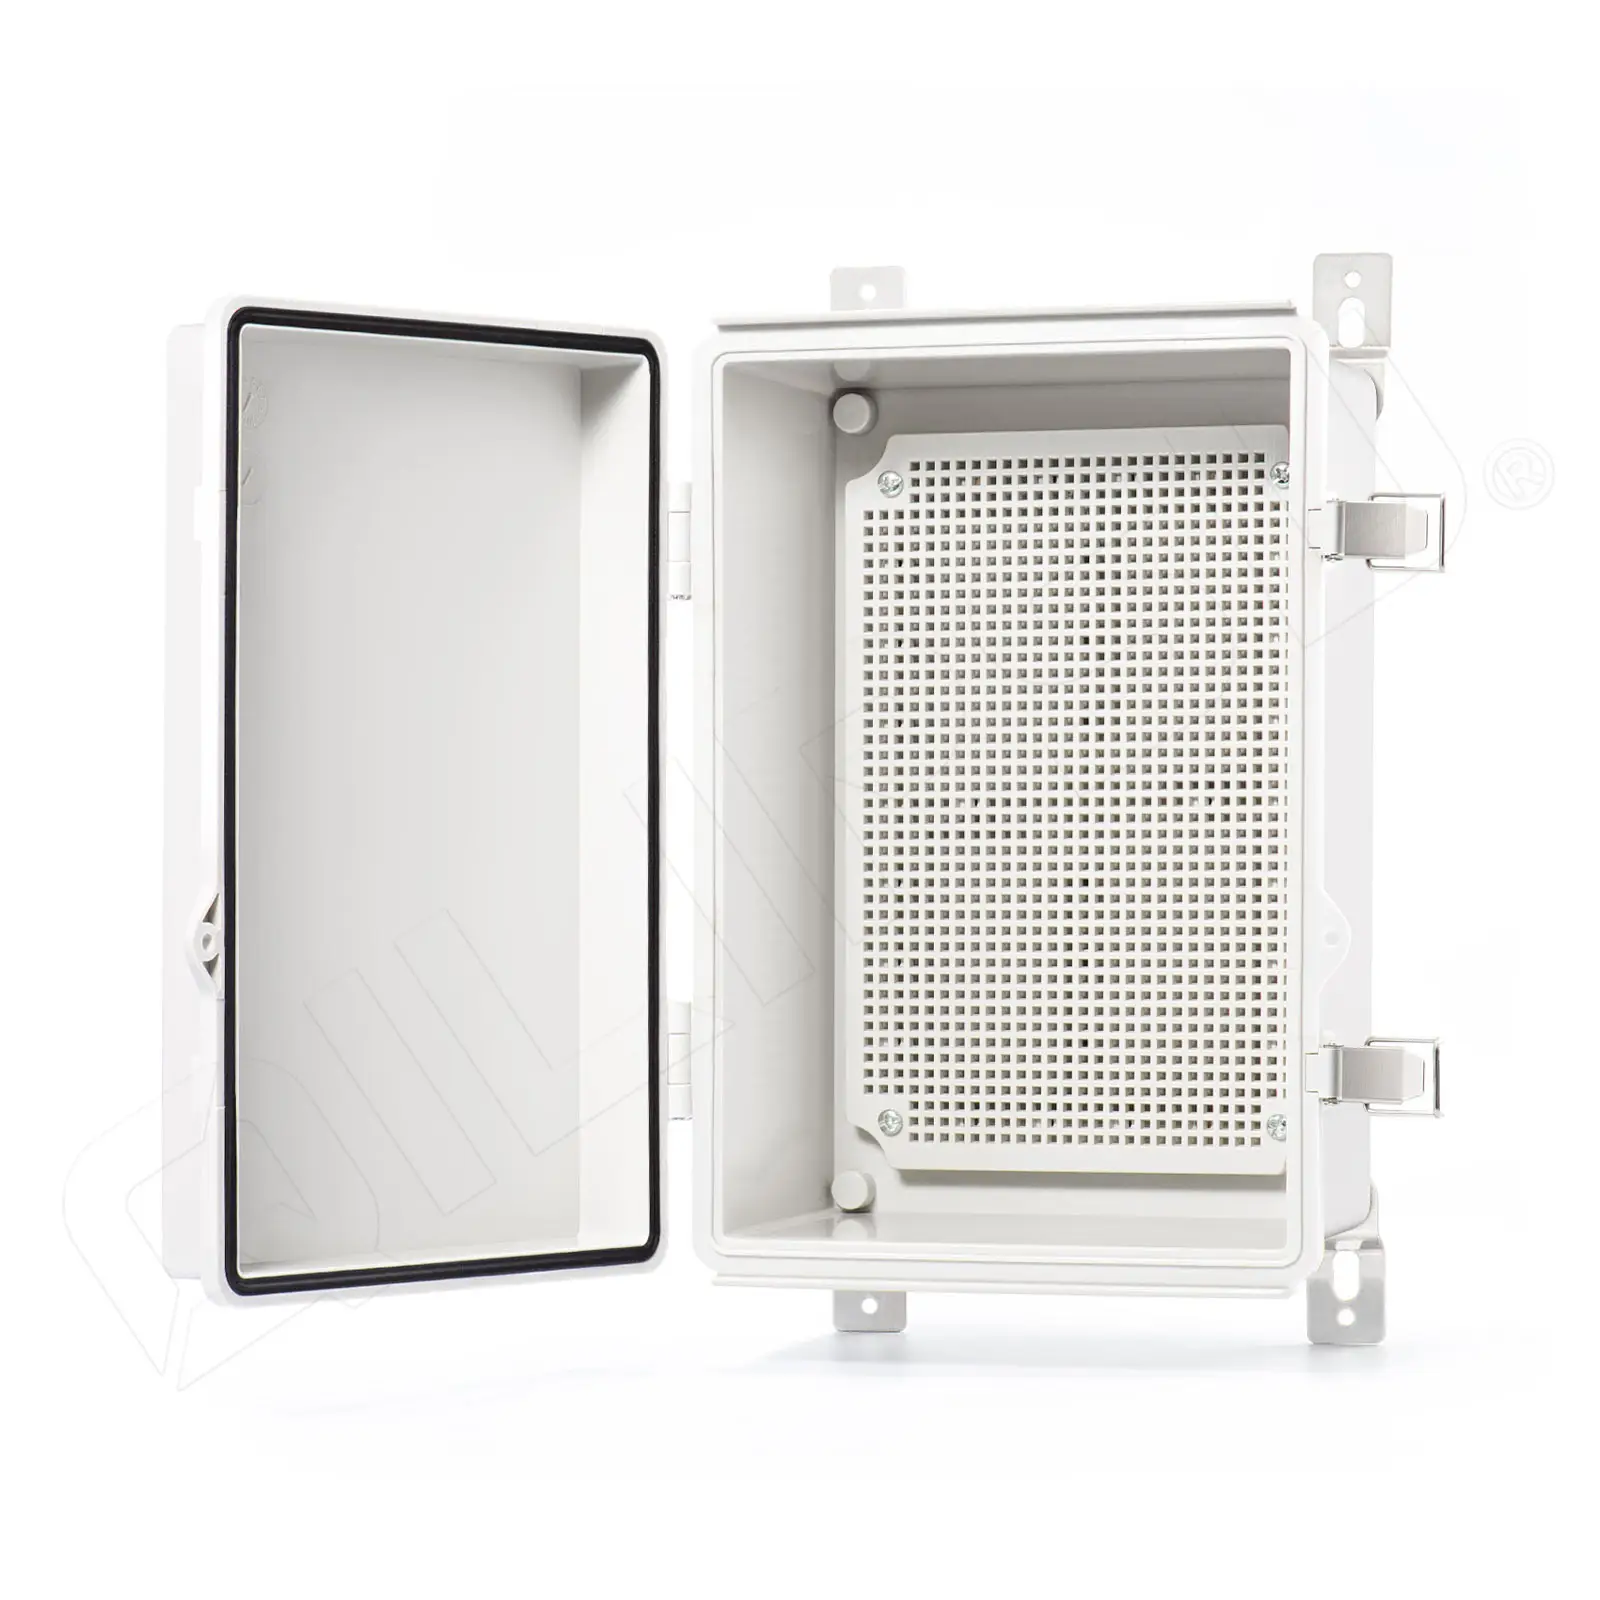 QILIPSU IP67 su geçirmez bağlantı kutusu açık elektrik kutusu ABS plastik muhafaza Proejcts için menteşeli gri kapı 11.2 "x 7.7" x 5.1"